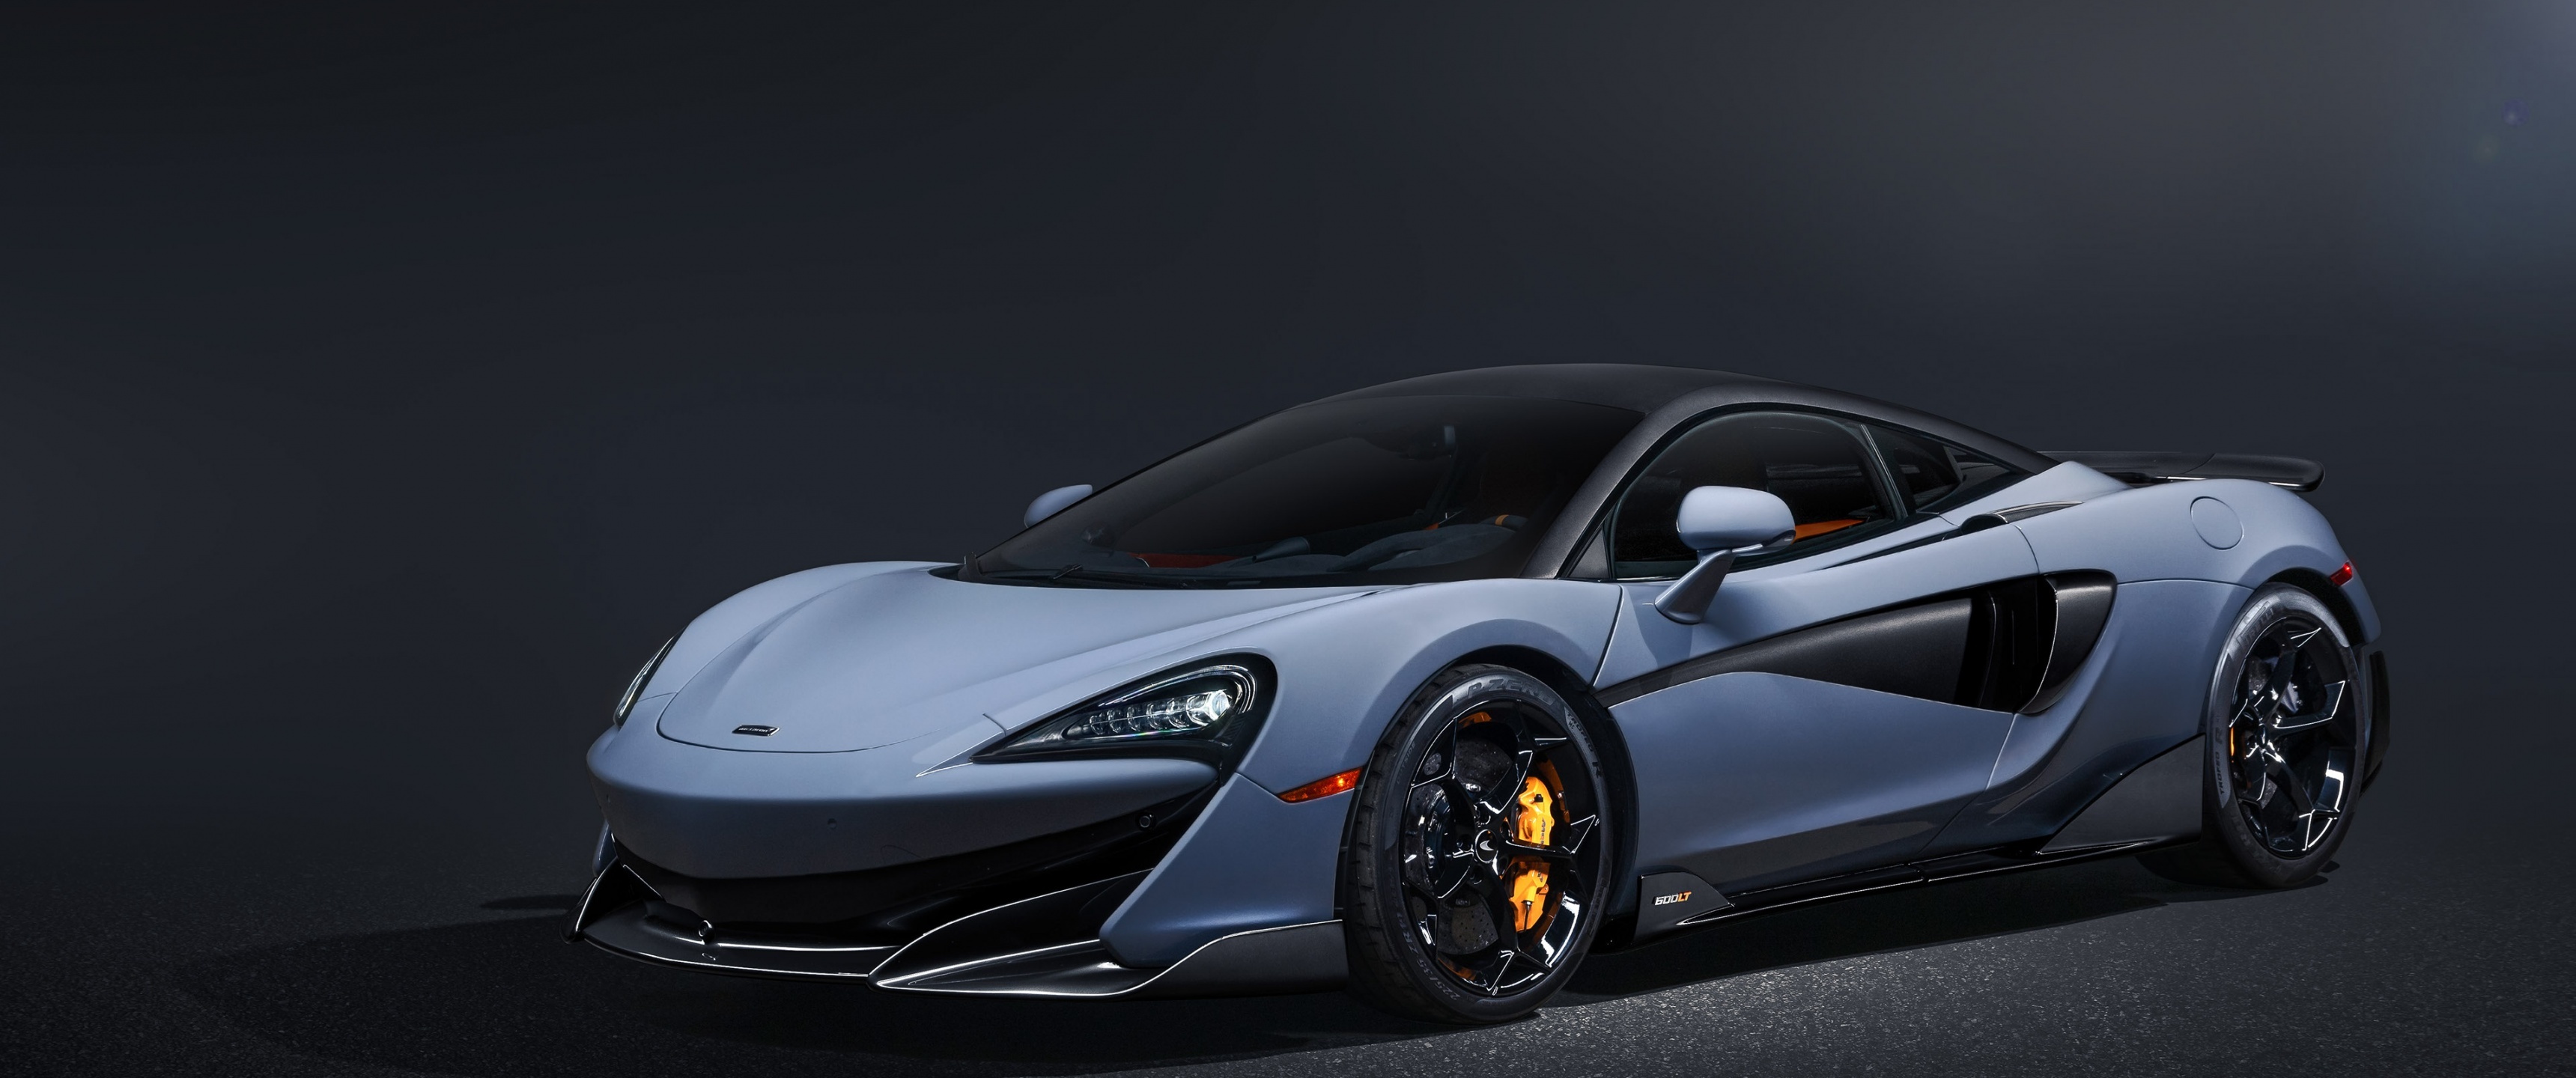 McLaren 570S, Sports car, Dark background, Automotive, 3440x1440 Dual Screen Desktop